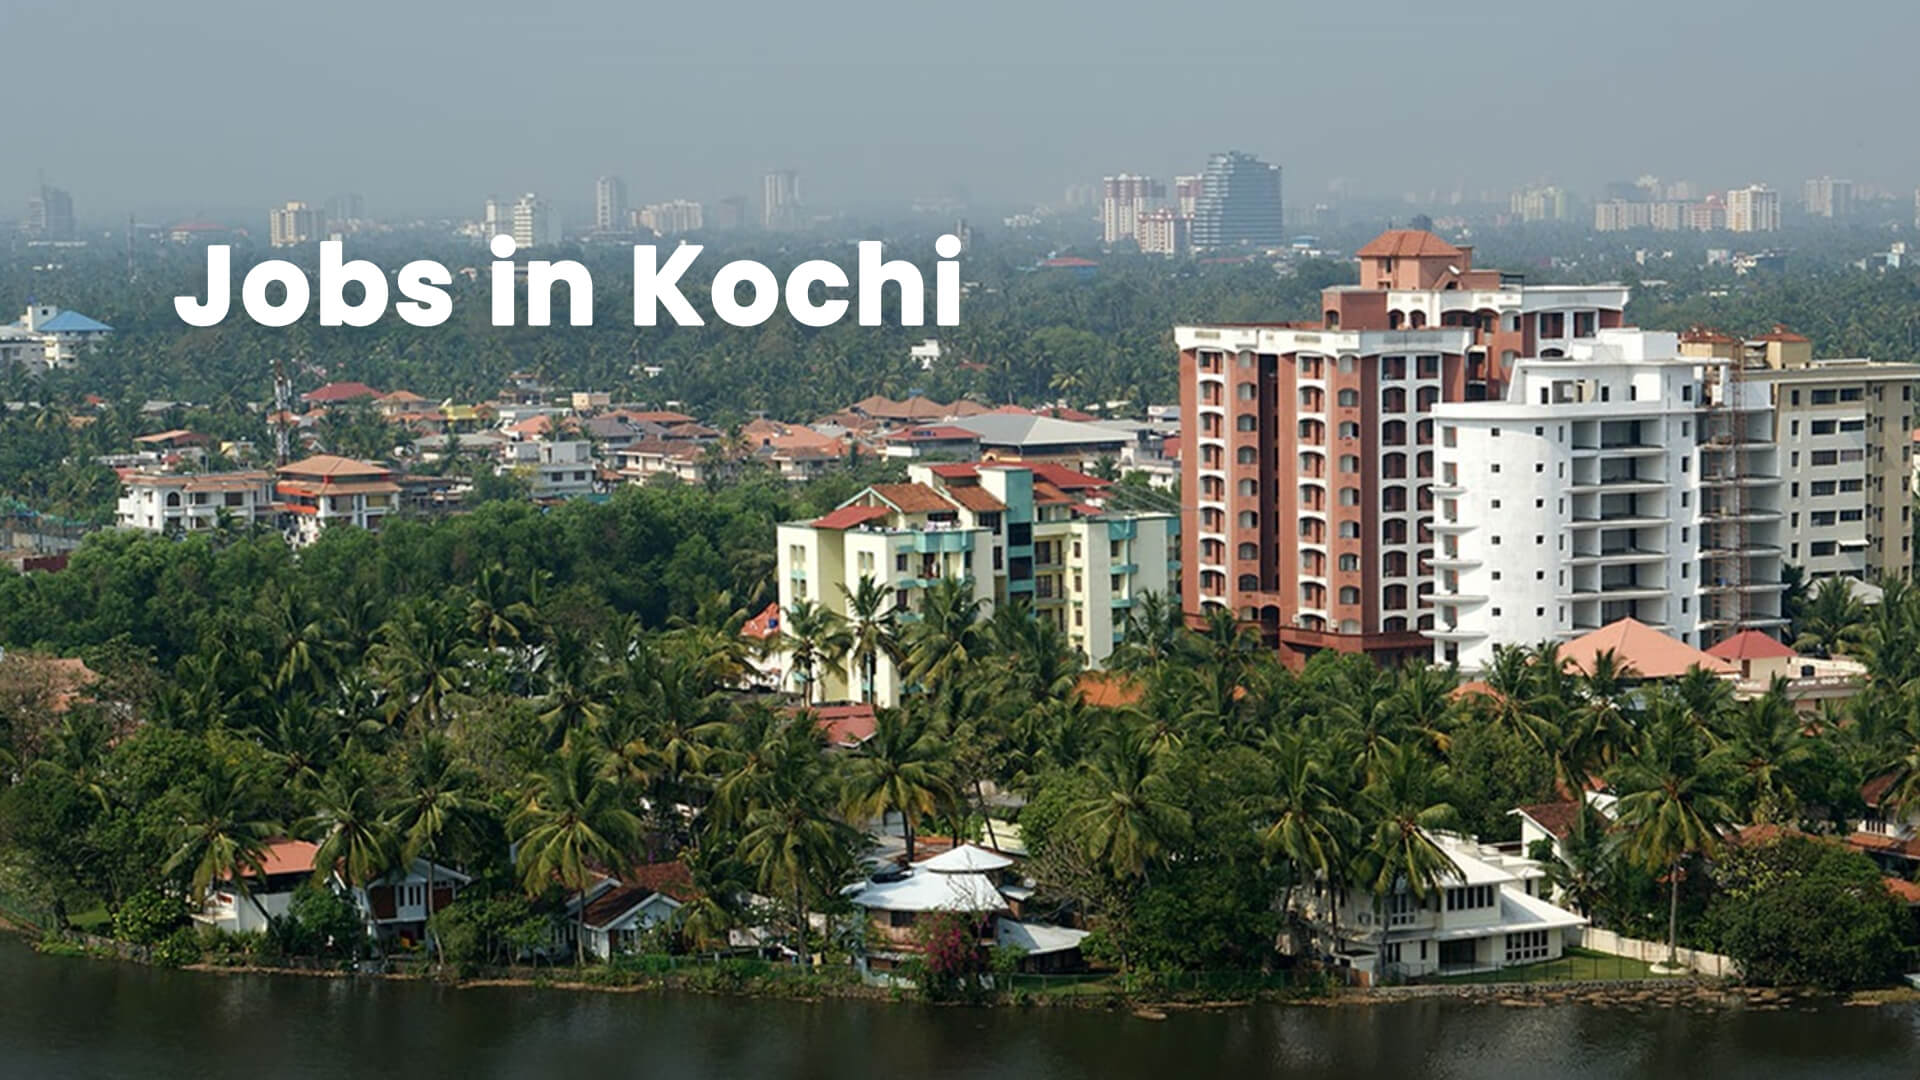 Jobs in Kochi